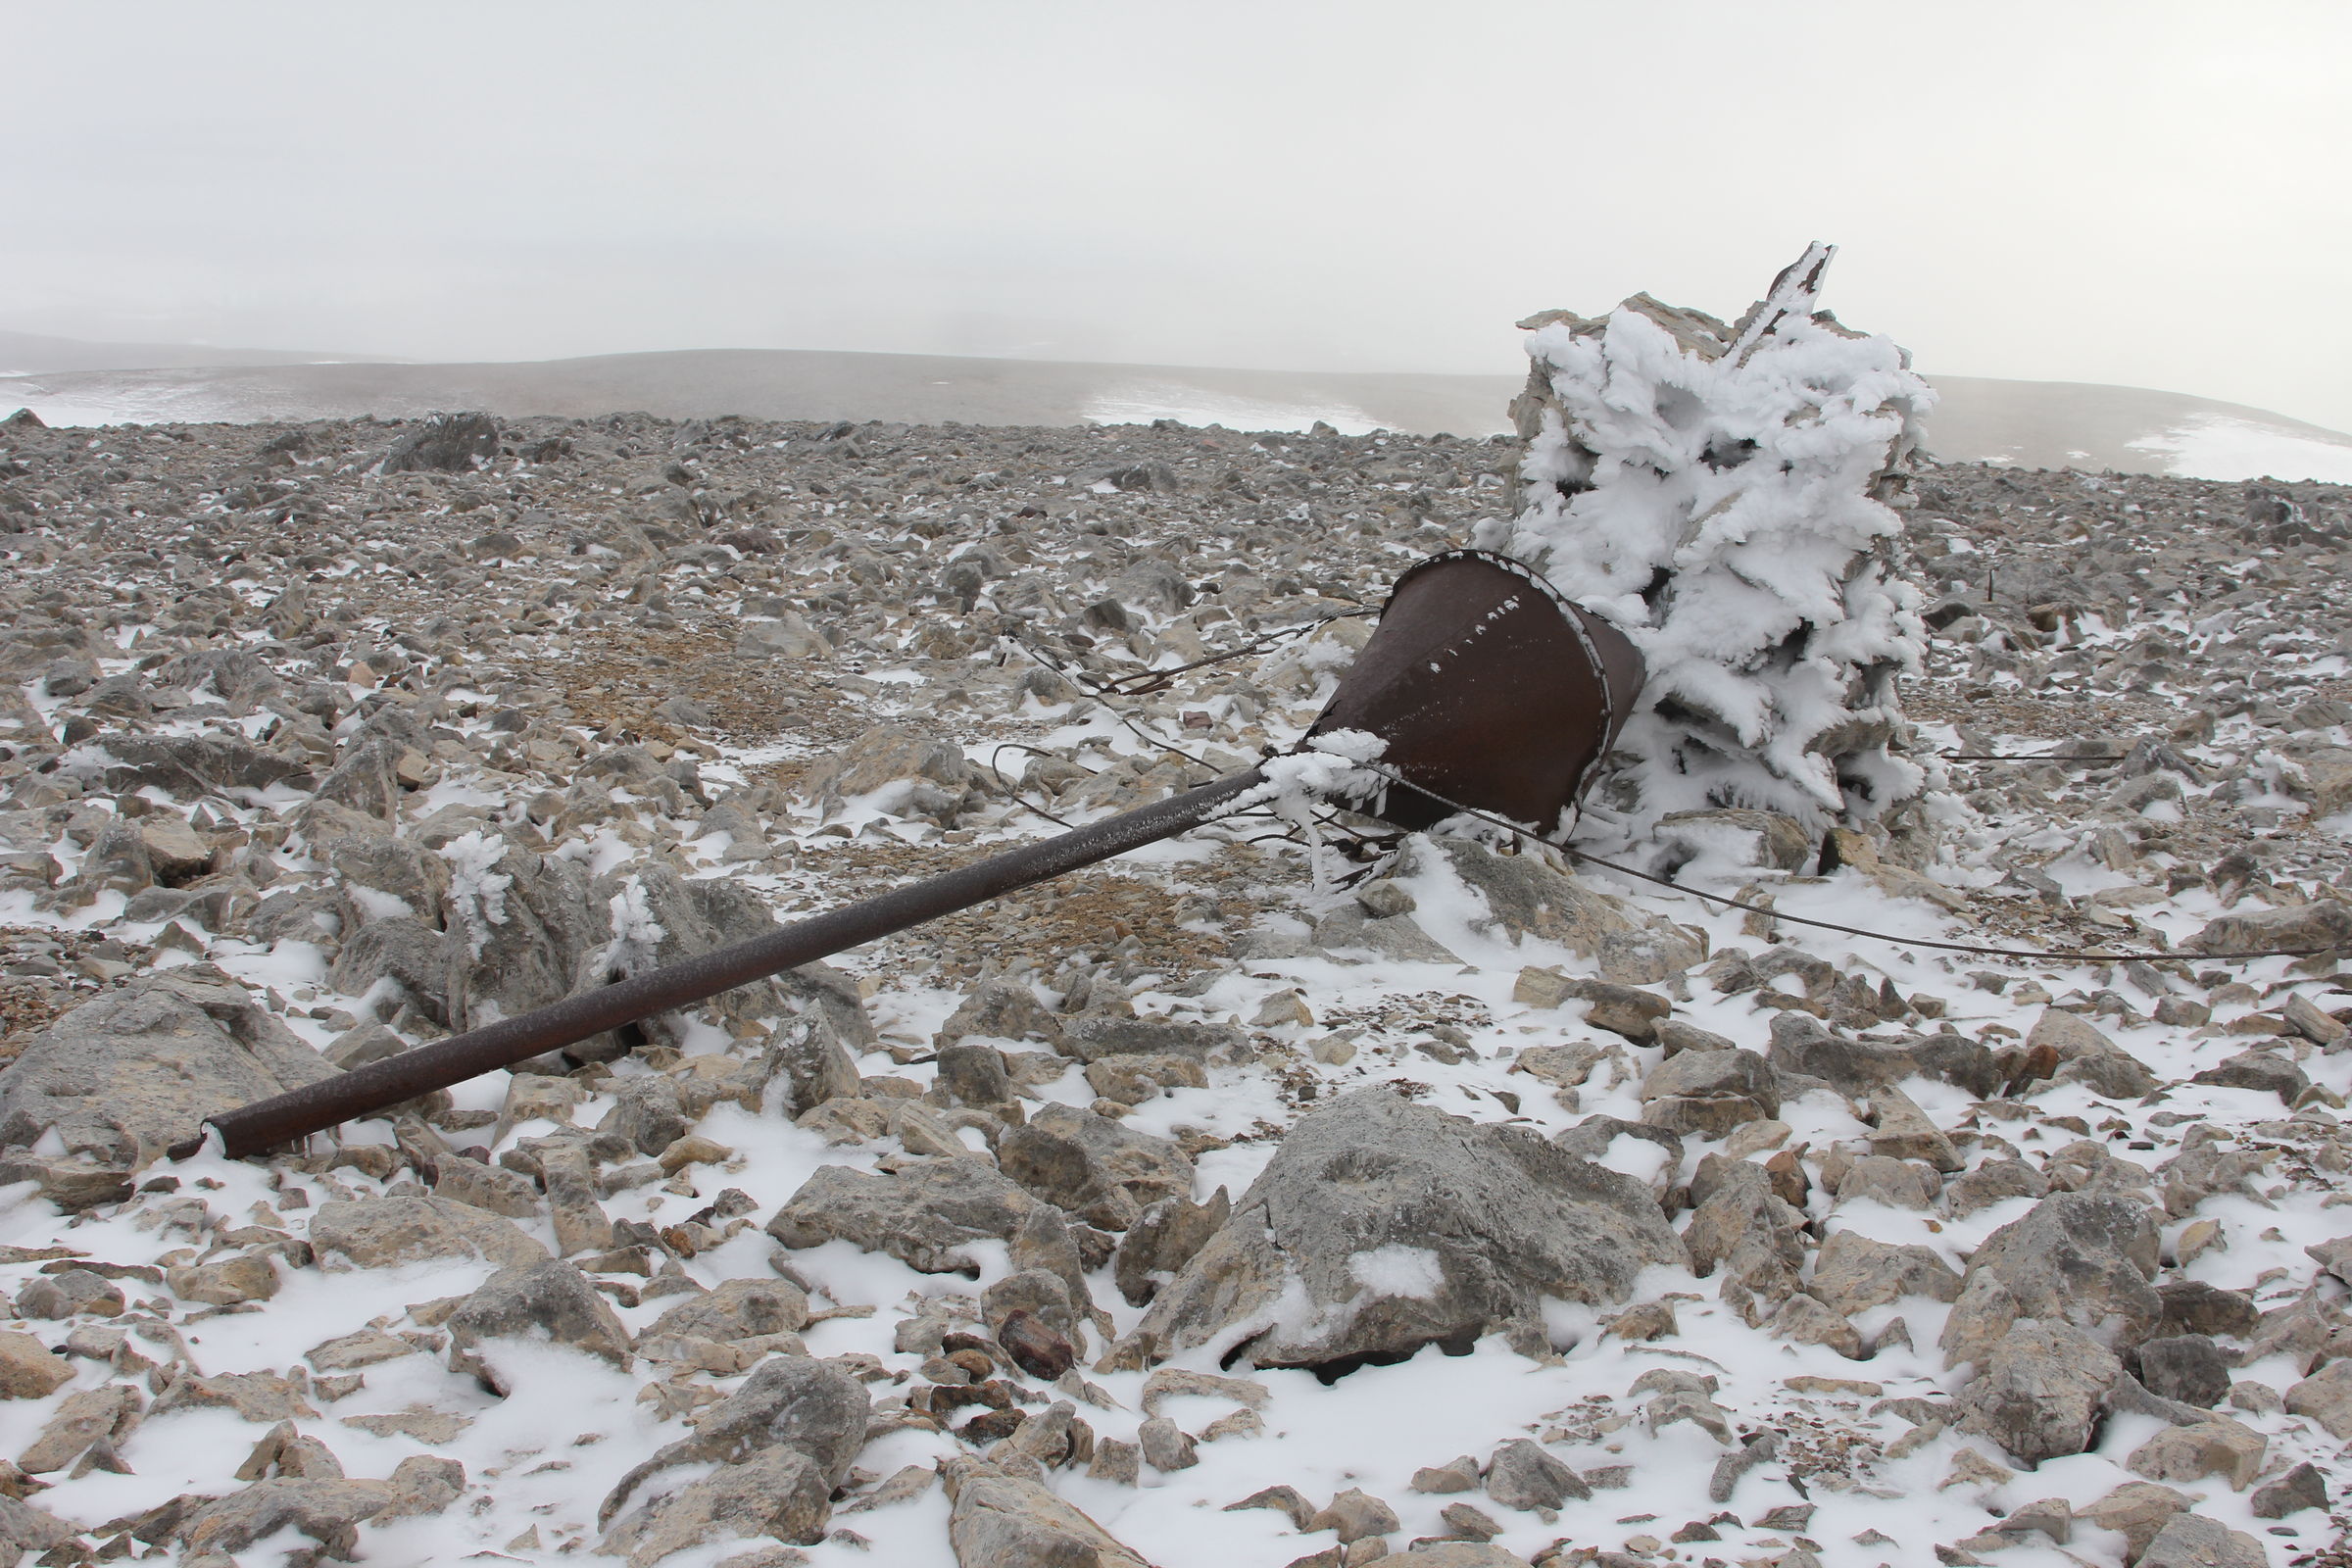  Закончилась экспедиция «Полярный меридиан. Шпицберген-2014»  - фото 35